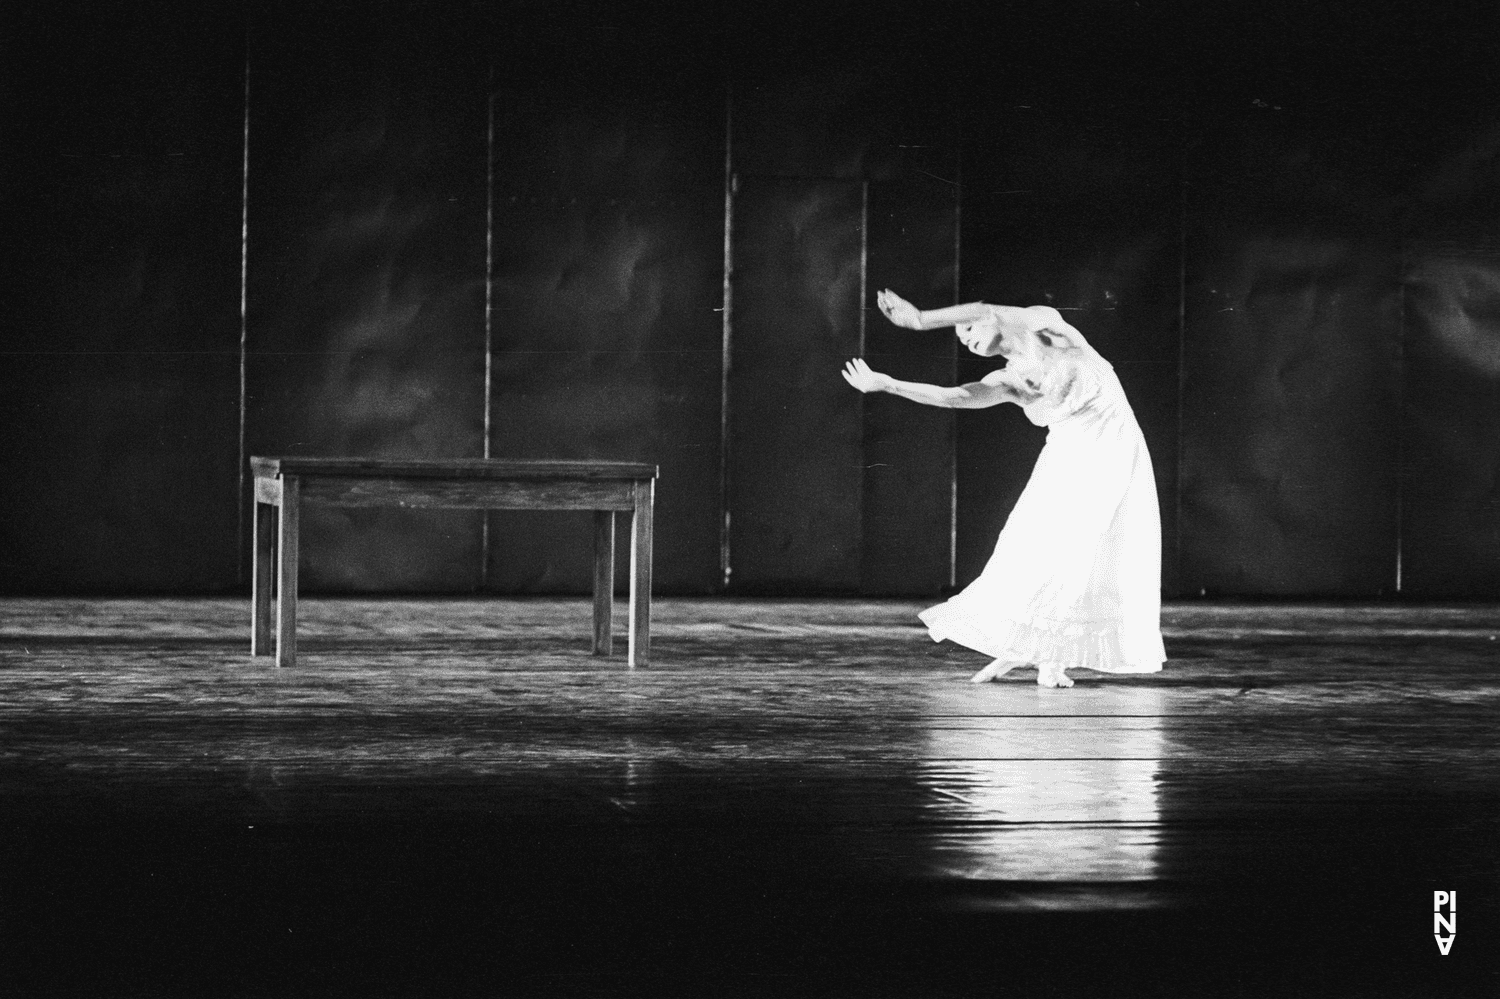 Malou Airaudo dans « Iphigenie auf Tauris » de Pina Bausch avec Tanztheater Wuppertal à l'Opernhaus Wuppertal (Allemagne), 20 avril 1974